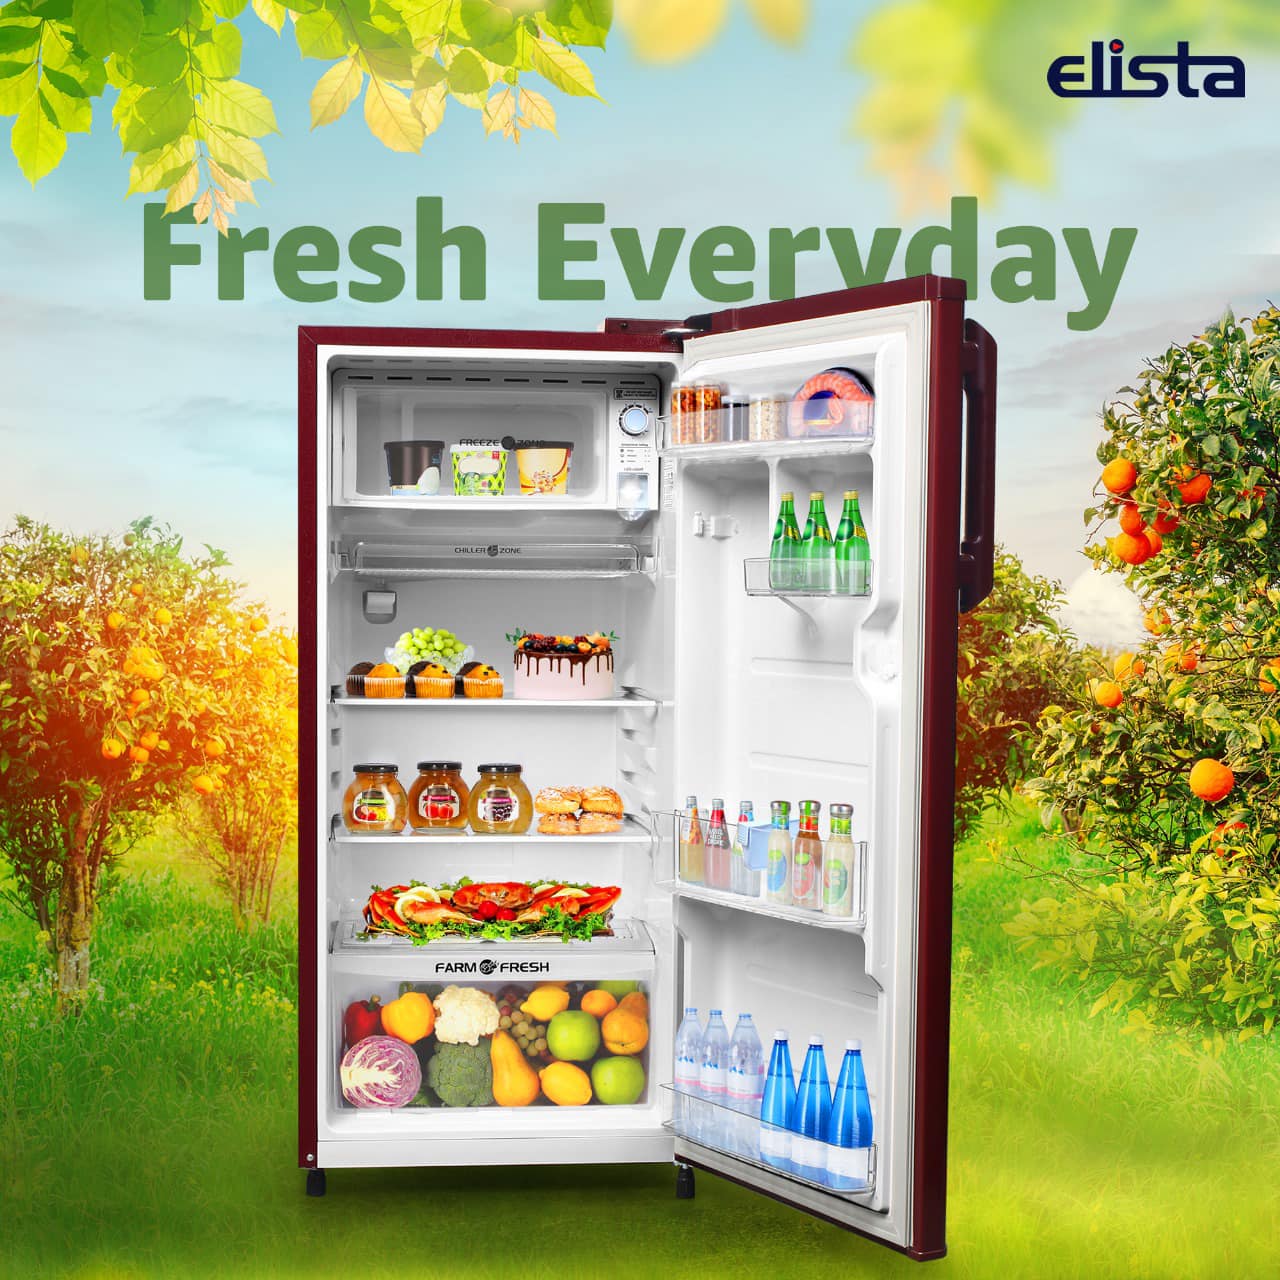 Elista best refrigerator